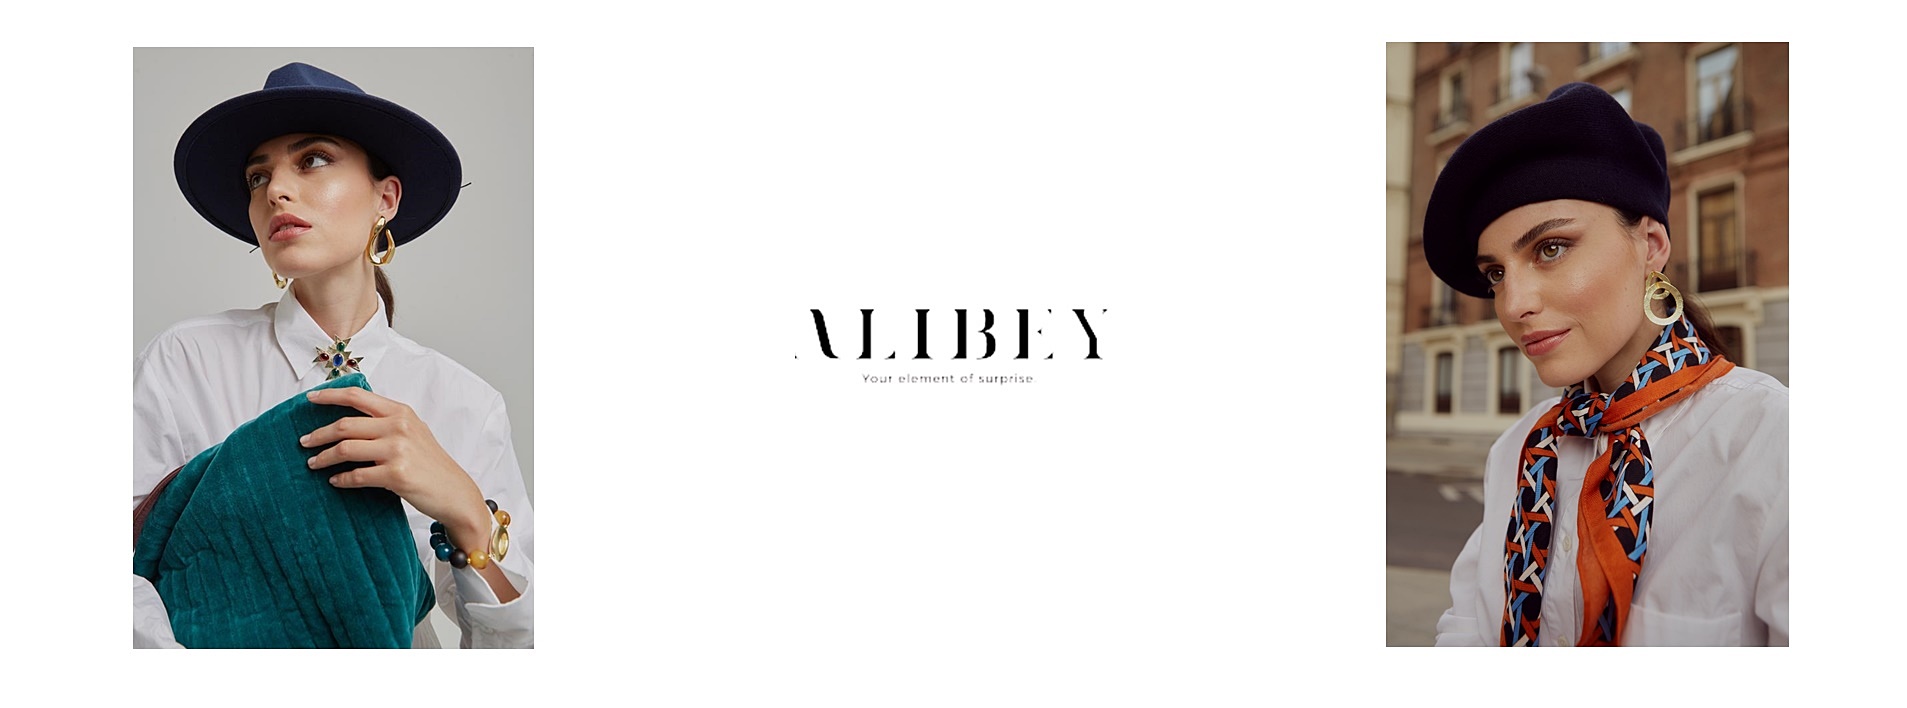 alibey-banner-invierno-pc